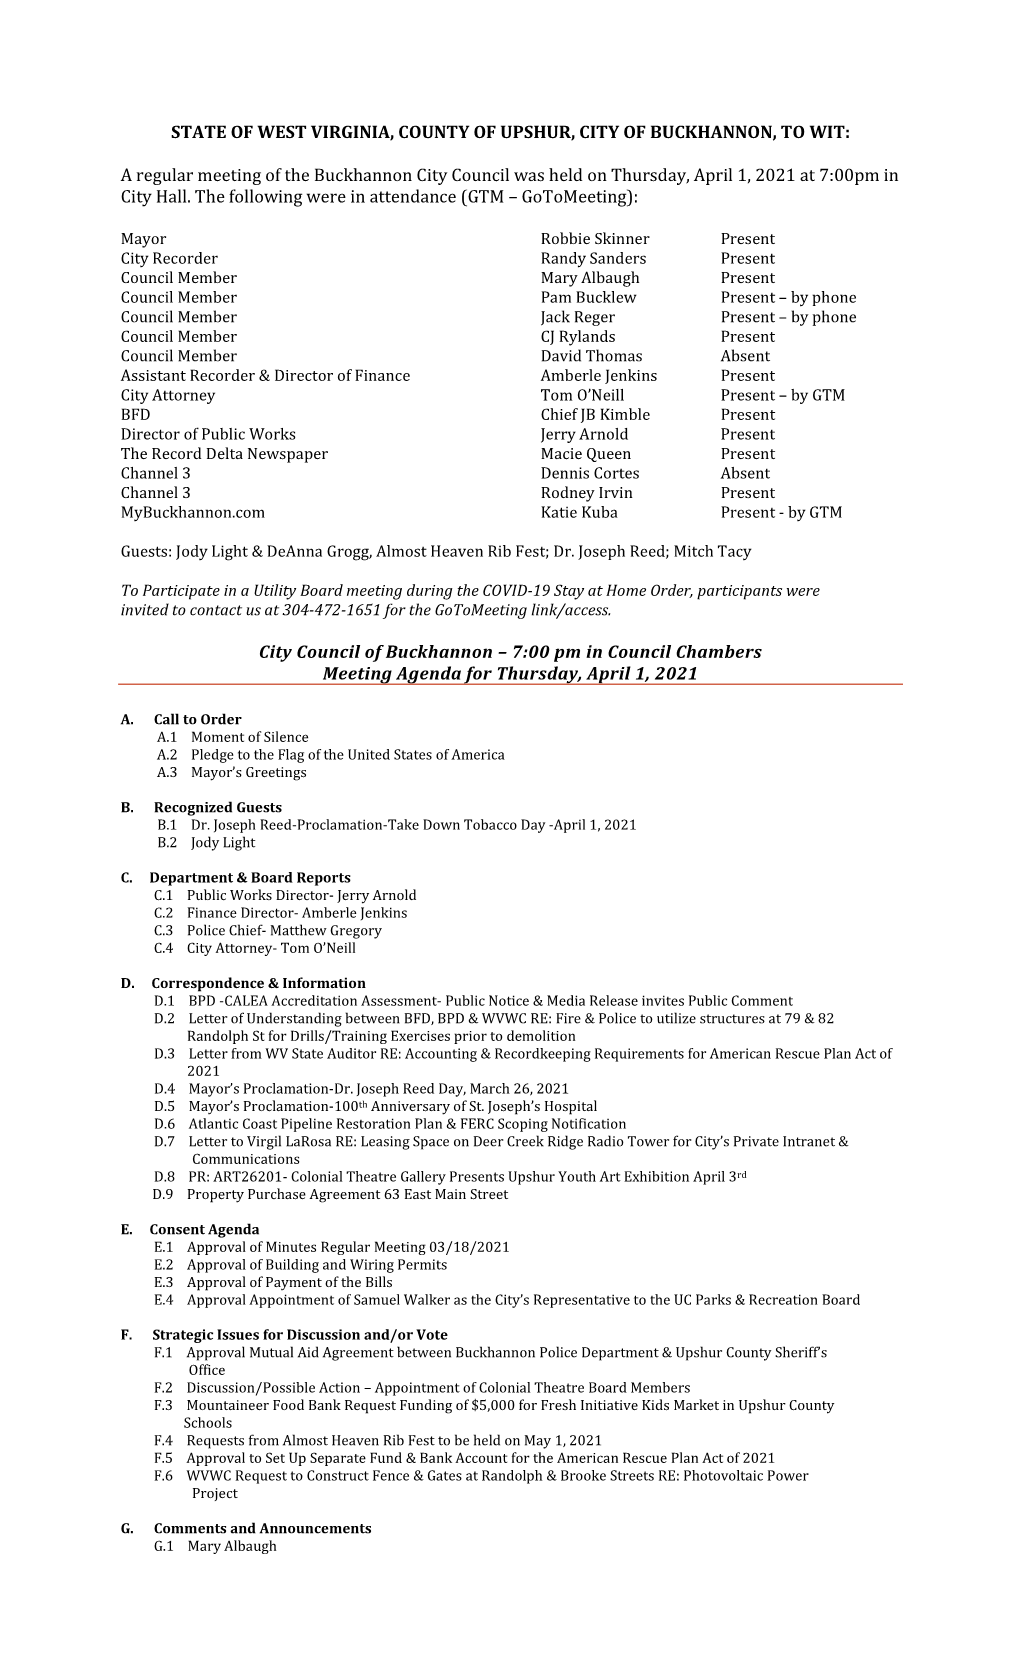 City Council Minutes for April 1, 2021